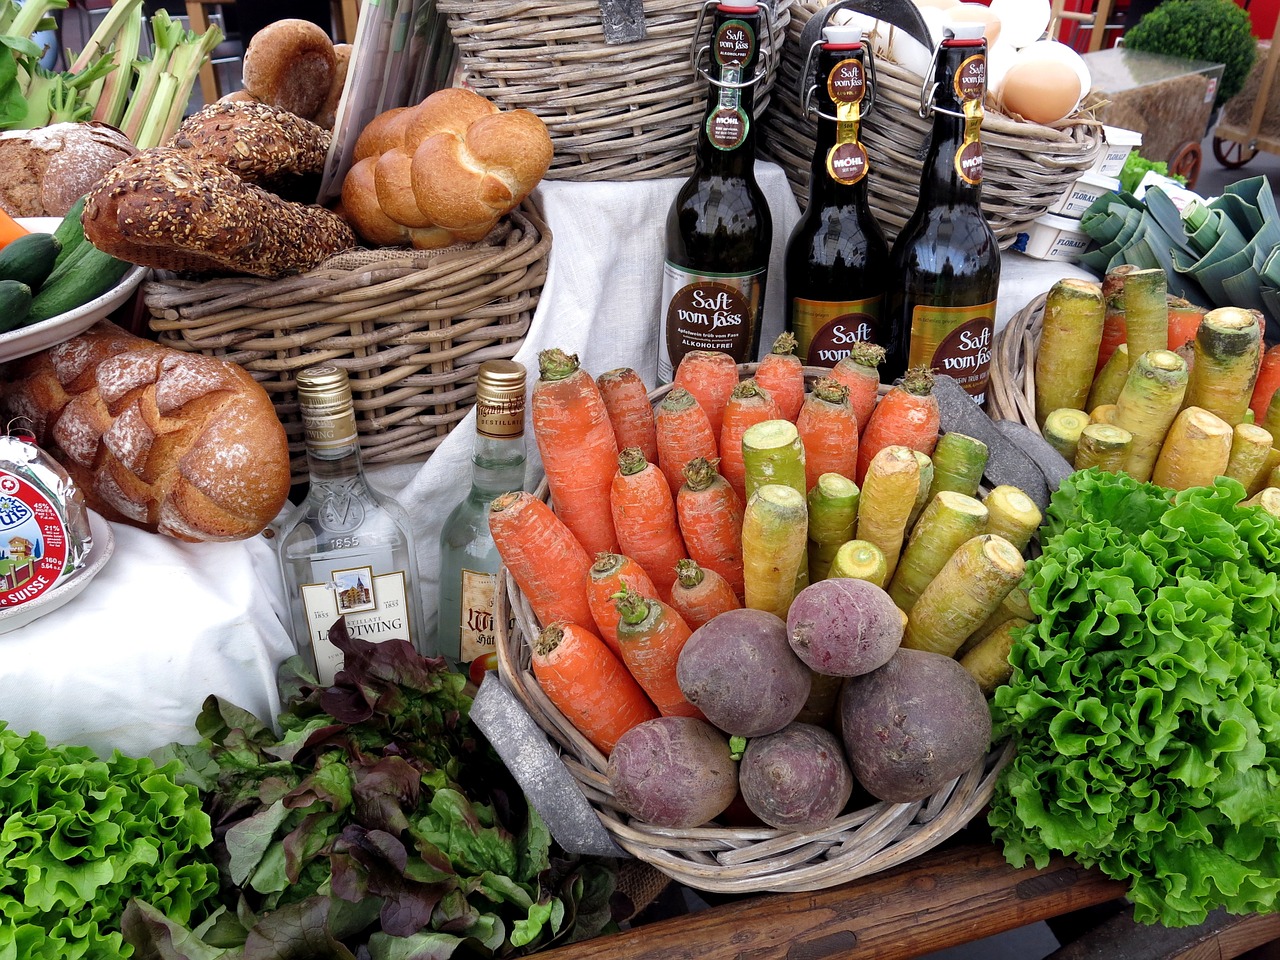 I prodotti alimentari raggiungono regolarmente mercati e negozi